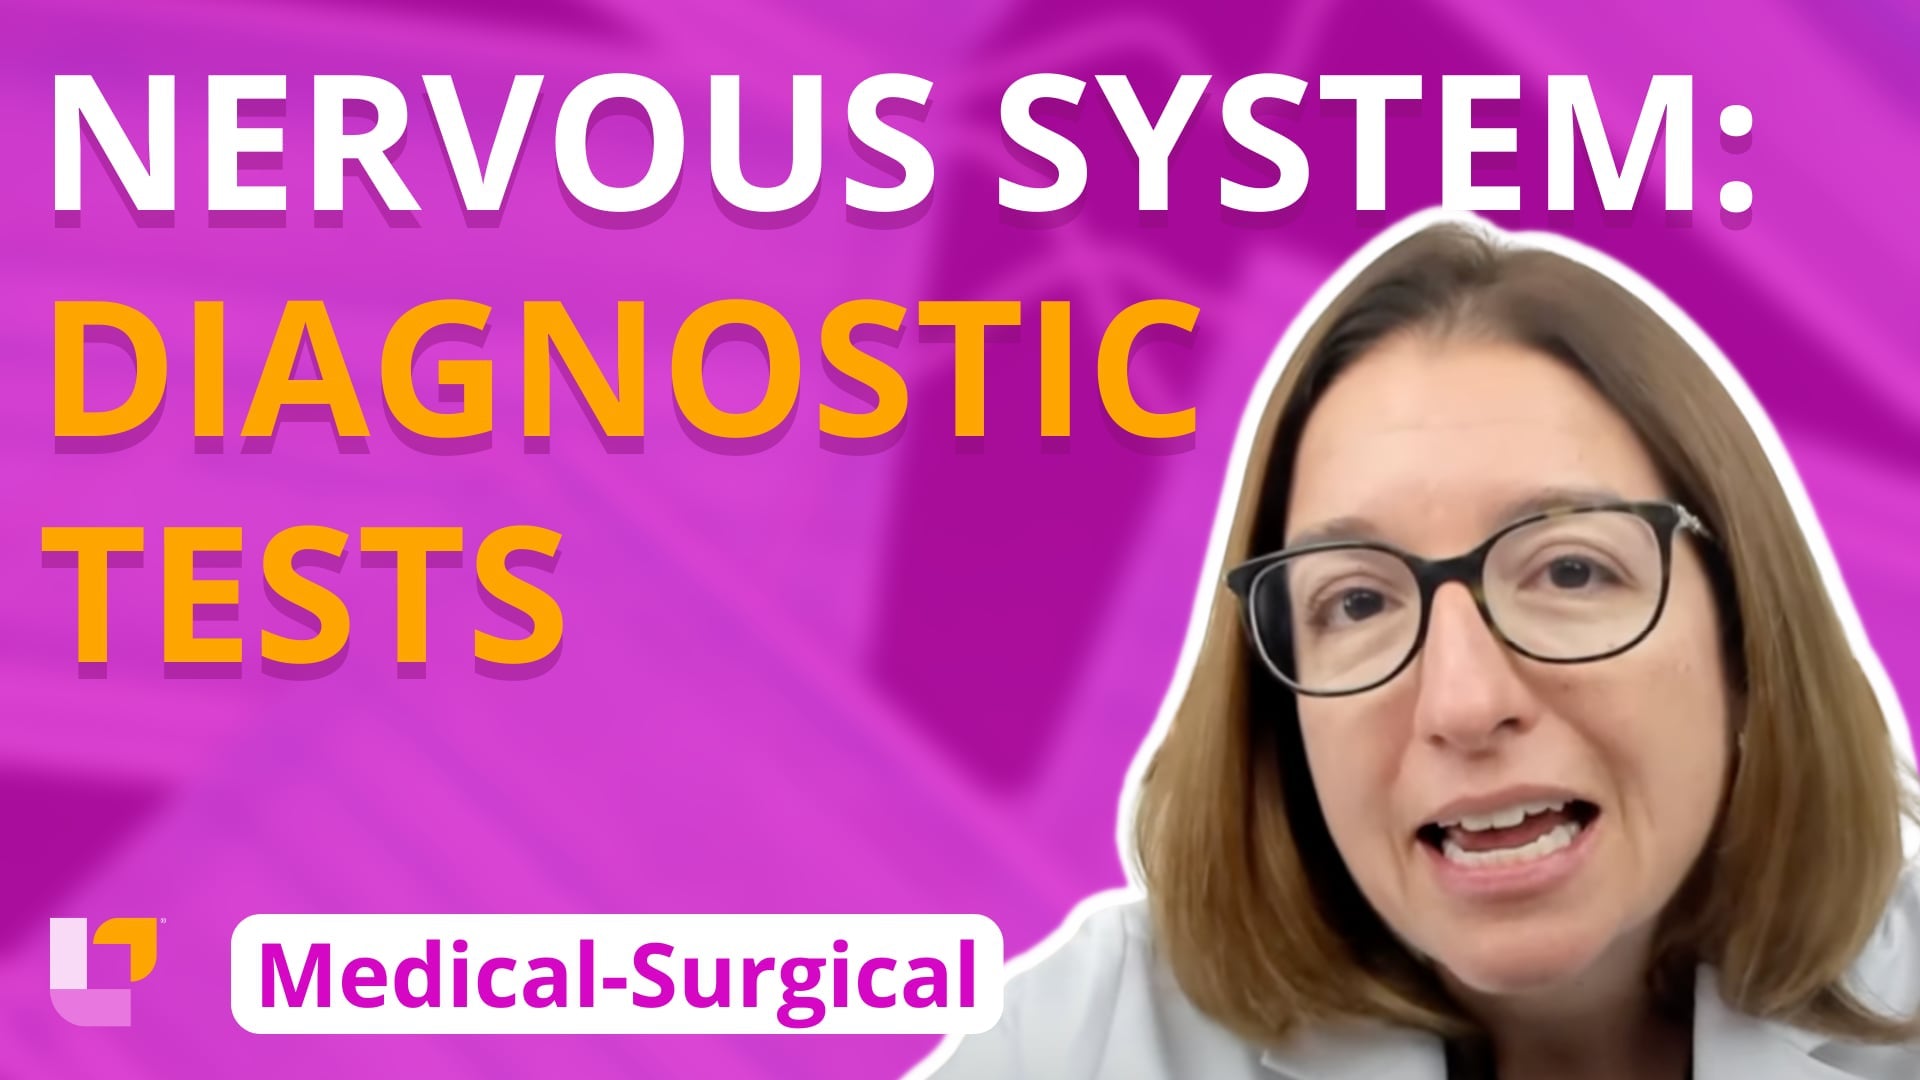 Med-Surg - Nervous System, part 5: Nervous System Diagnostic Tests - LevelUpRN